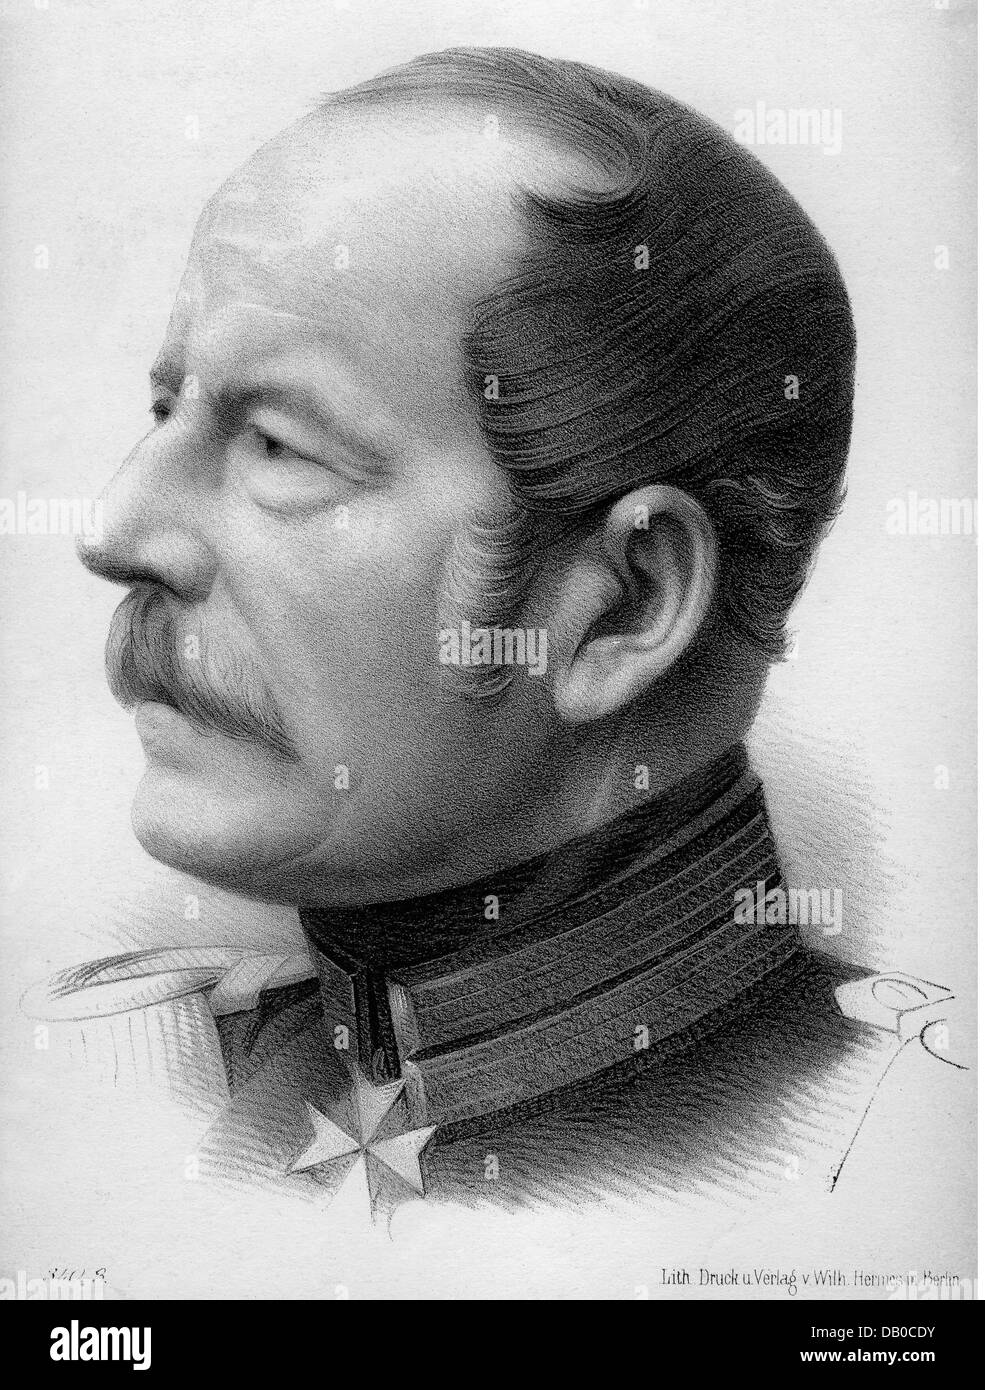 Herwarth von Bittenfeld, Karl Eberhard, 4.9.1796 - 2.9.1884, Prussian general, portrait, lithograph, 2nd half 19th century, Stock Photo